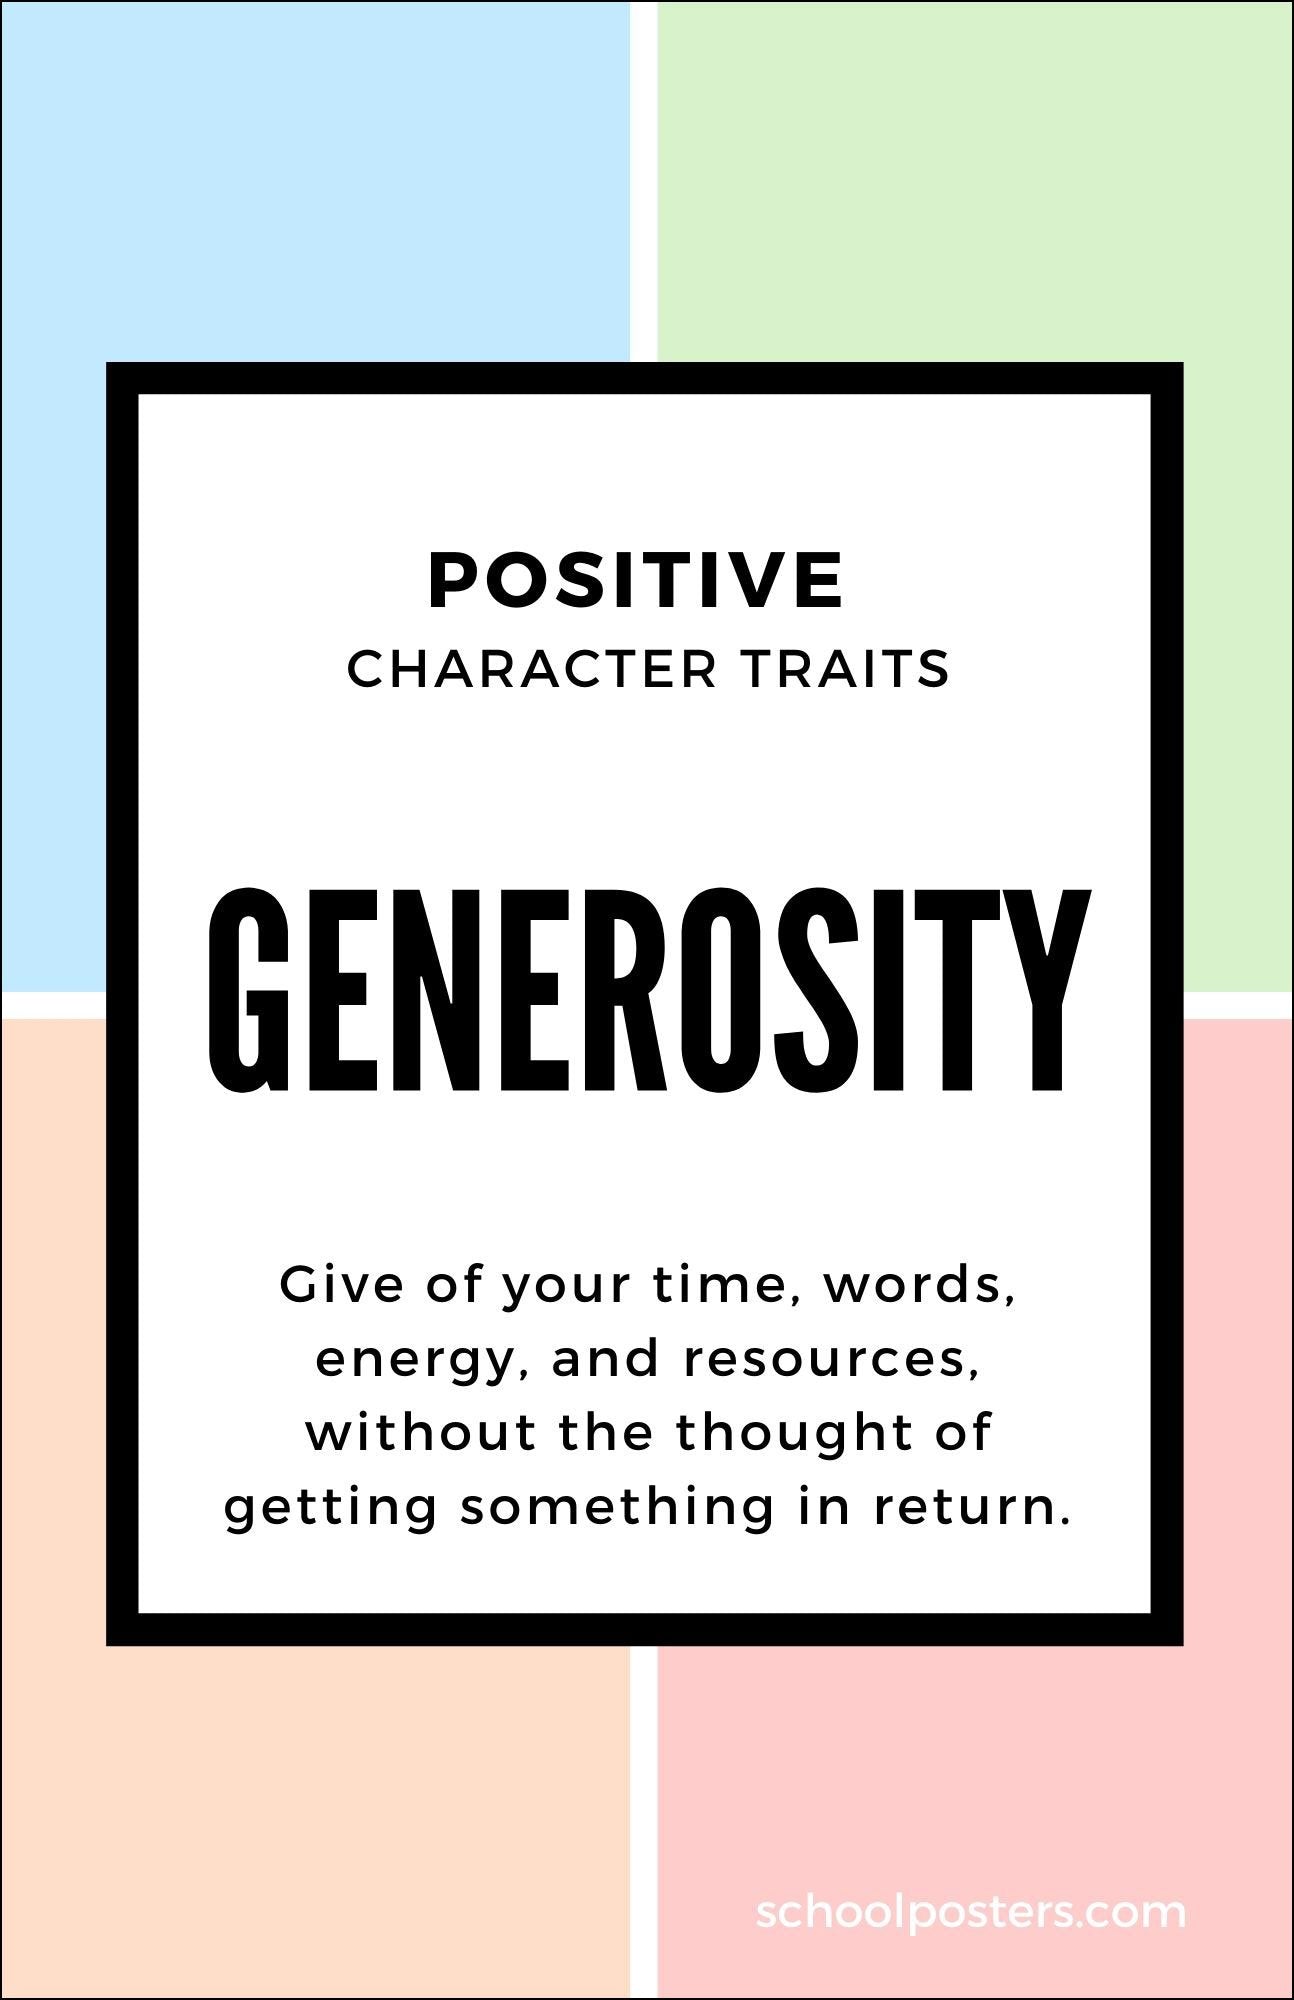 Character Generosity Poster